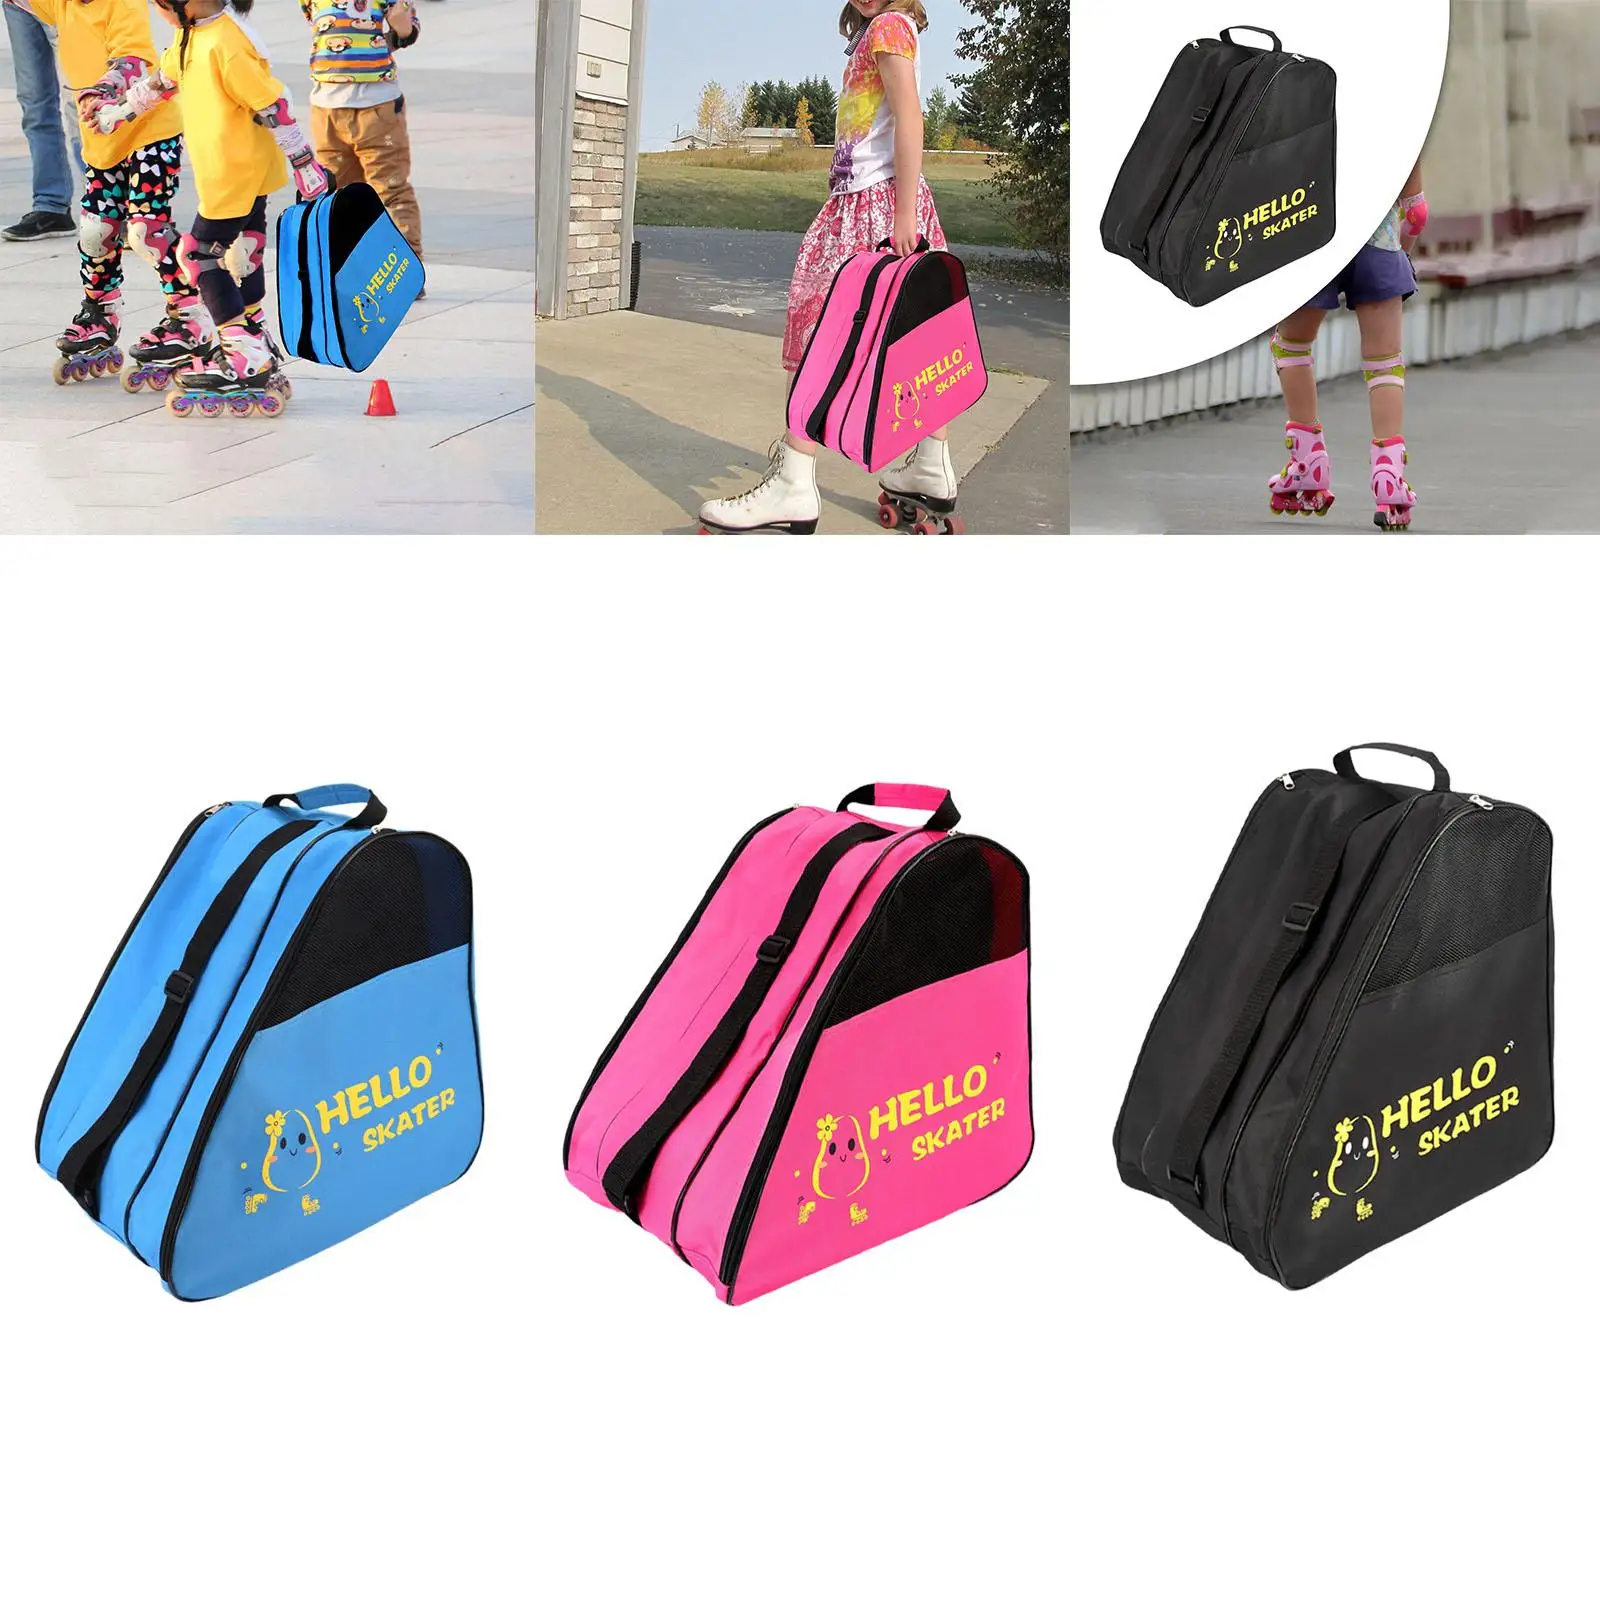 Roller Skates Storage Bag Carrier Bag for Outdoor Kids Figure Skating Shoes